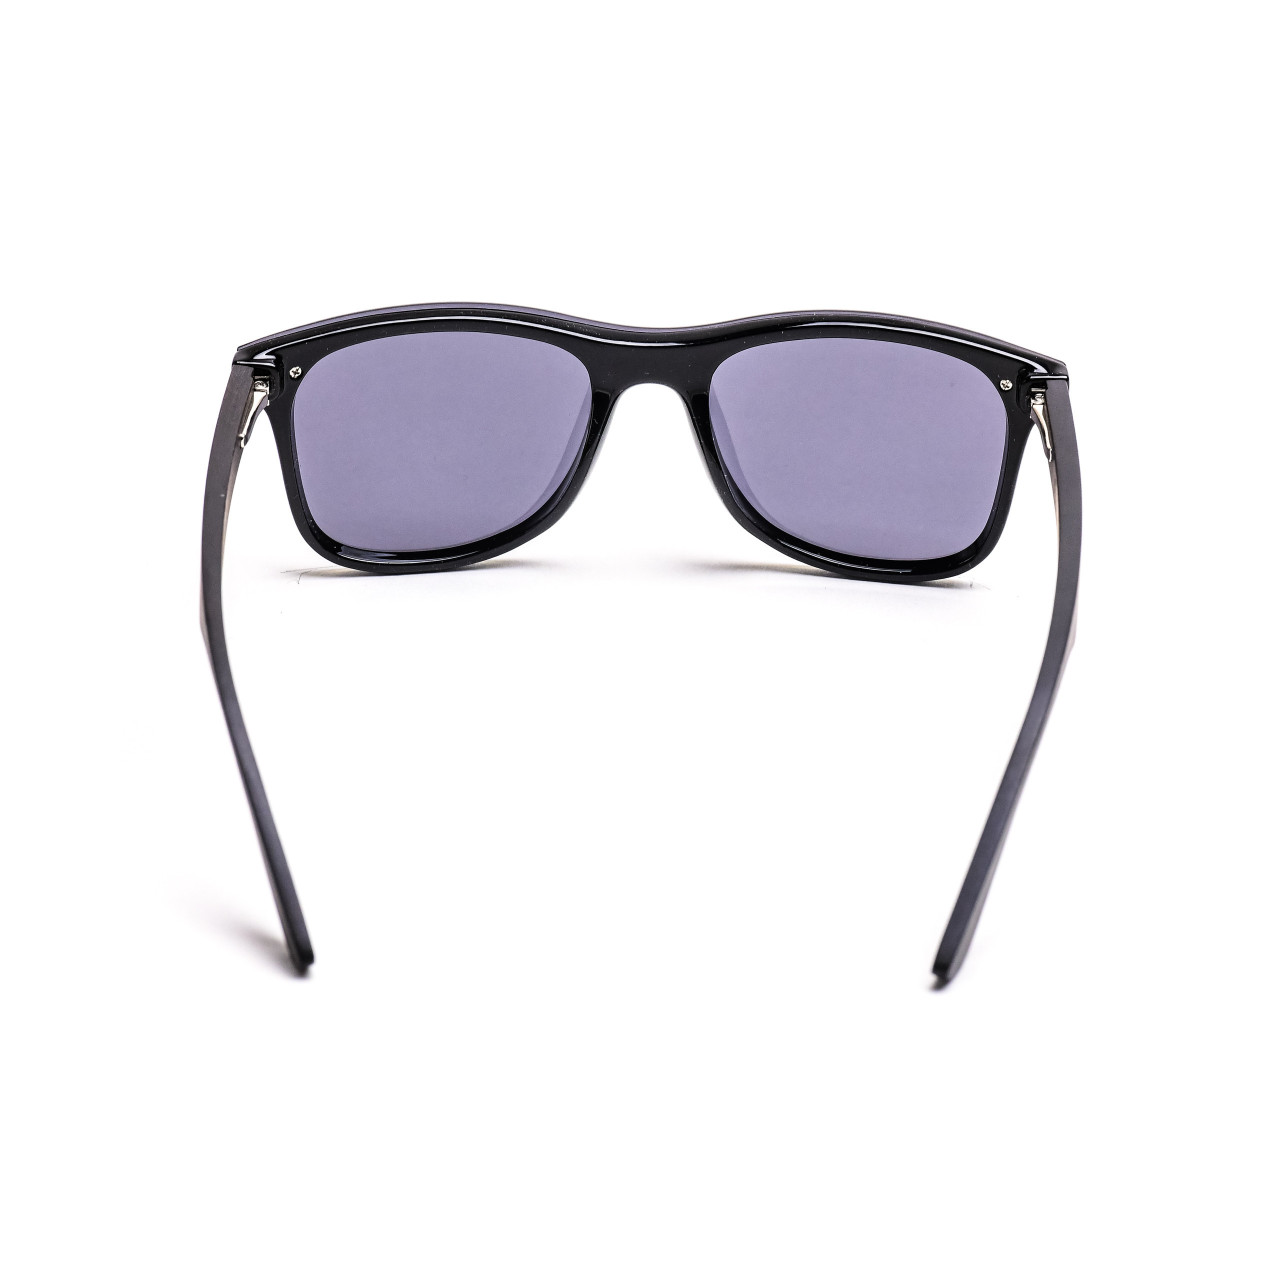 Brýle Luxury – černé čočky + eben s gravírováním